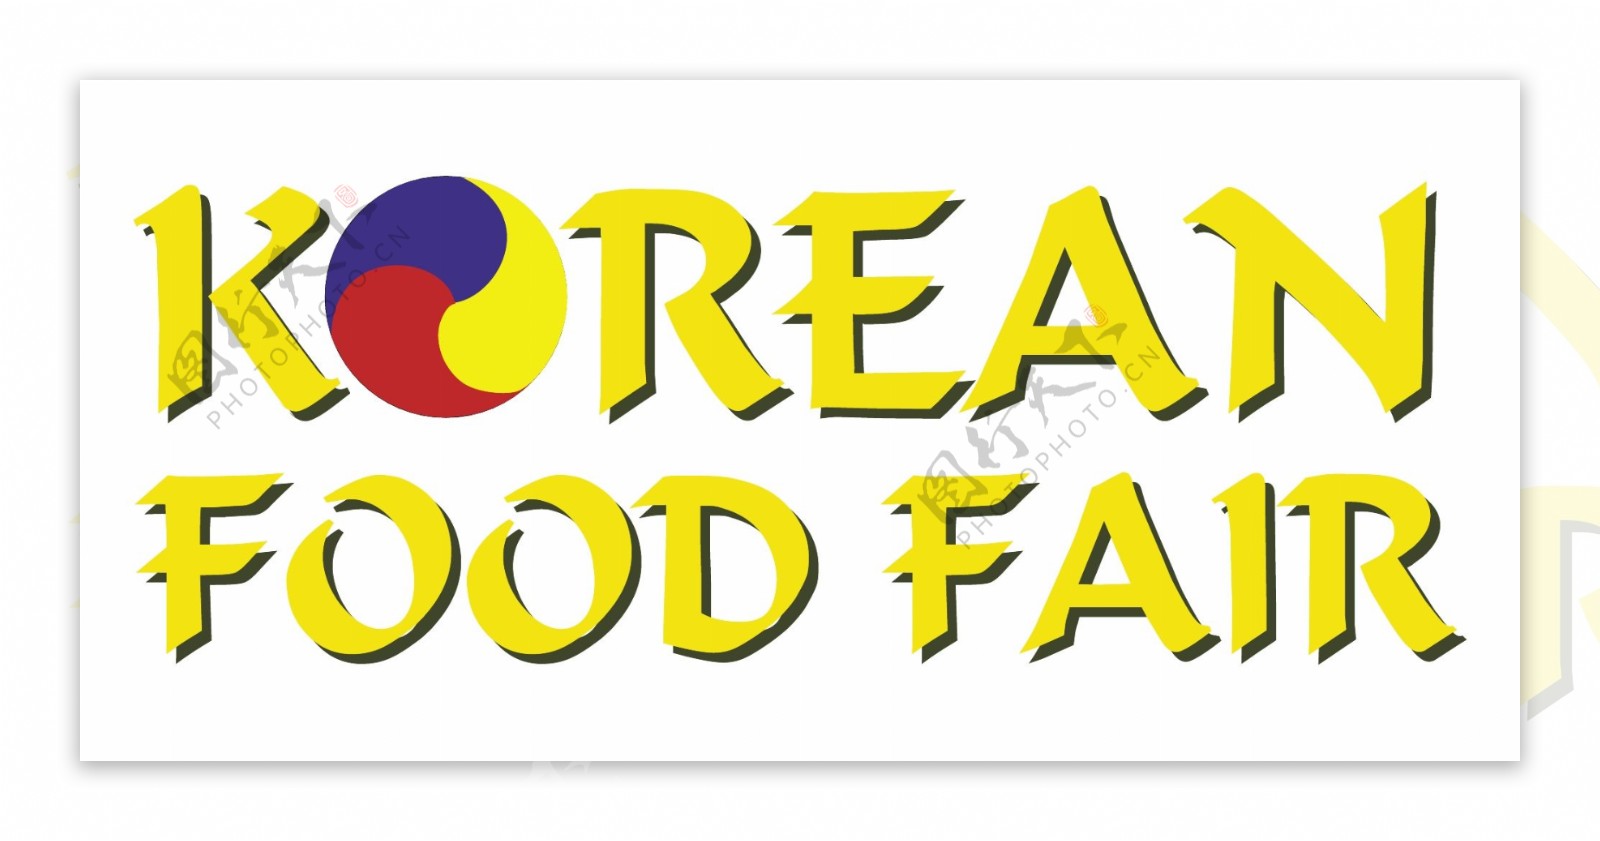 韩国食品博览会